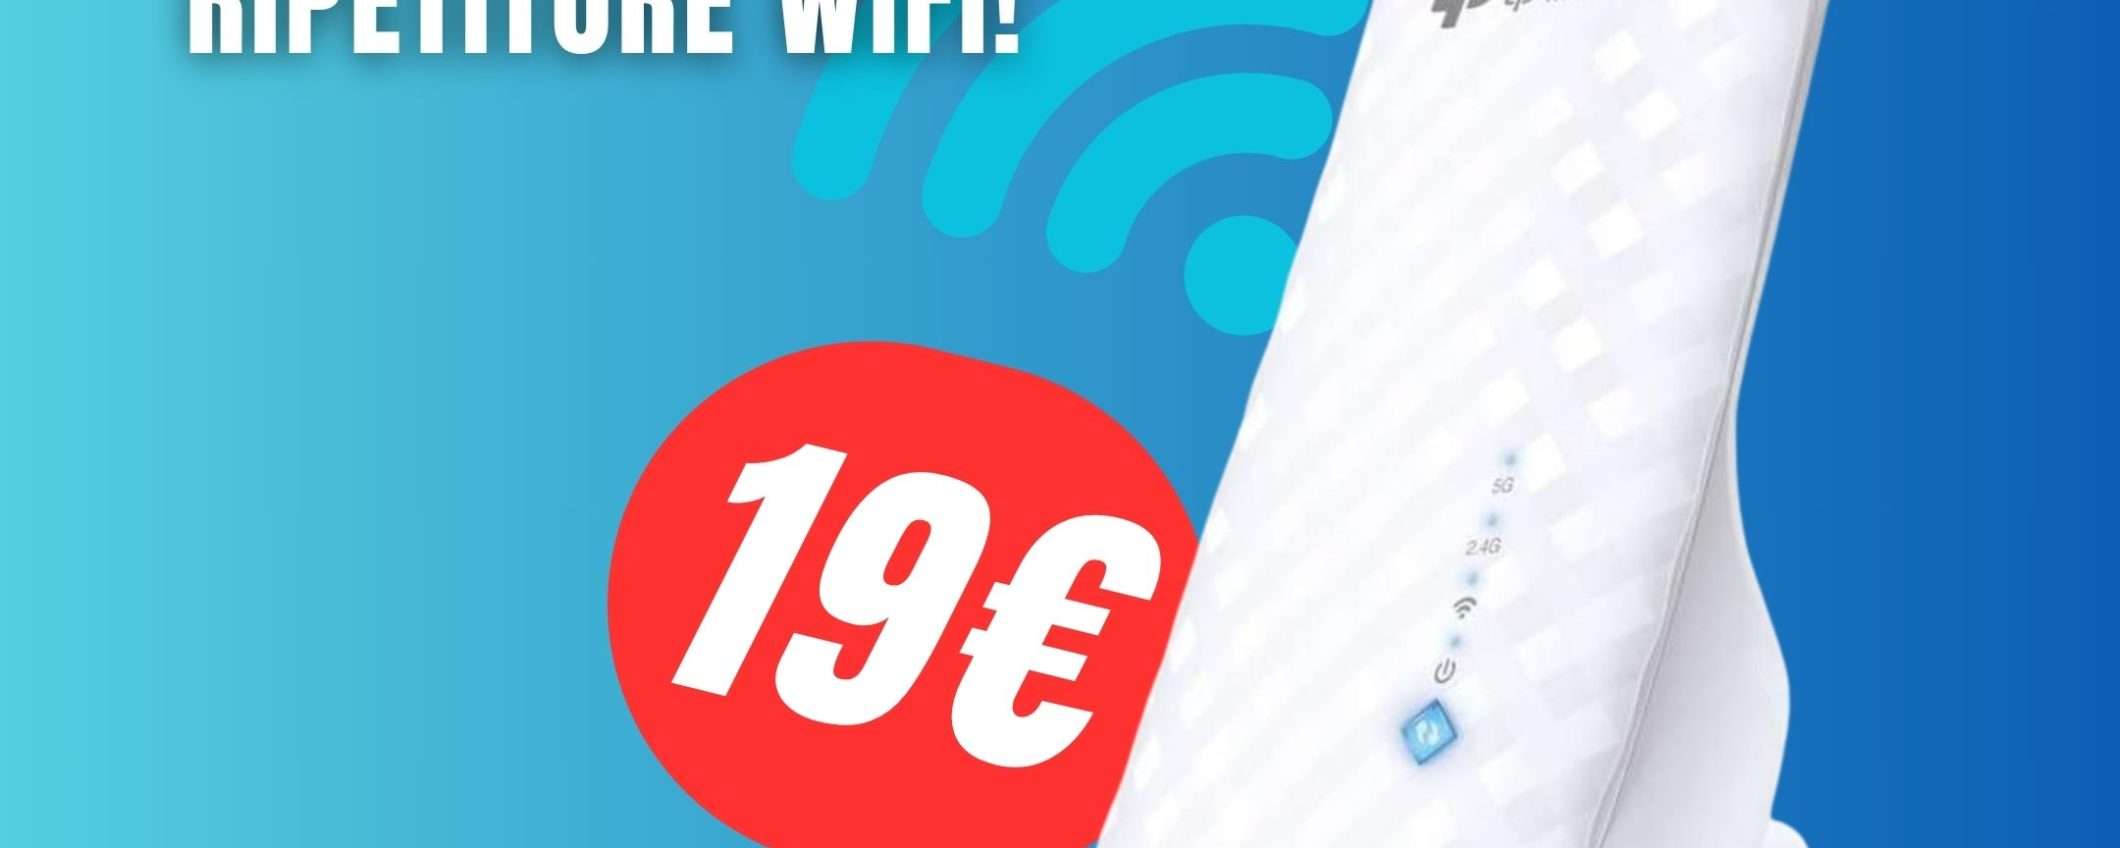 Dì addio ai problemi di WiFi con l'Extender TP-Link a soli 19€!